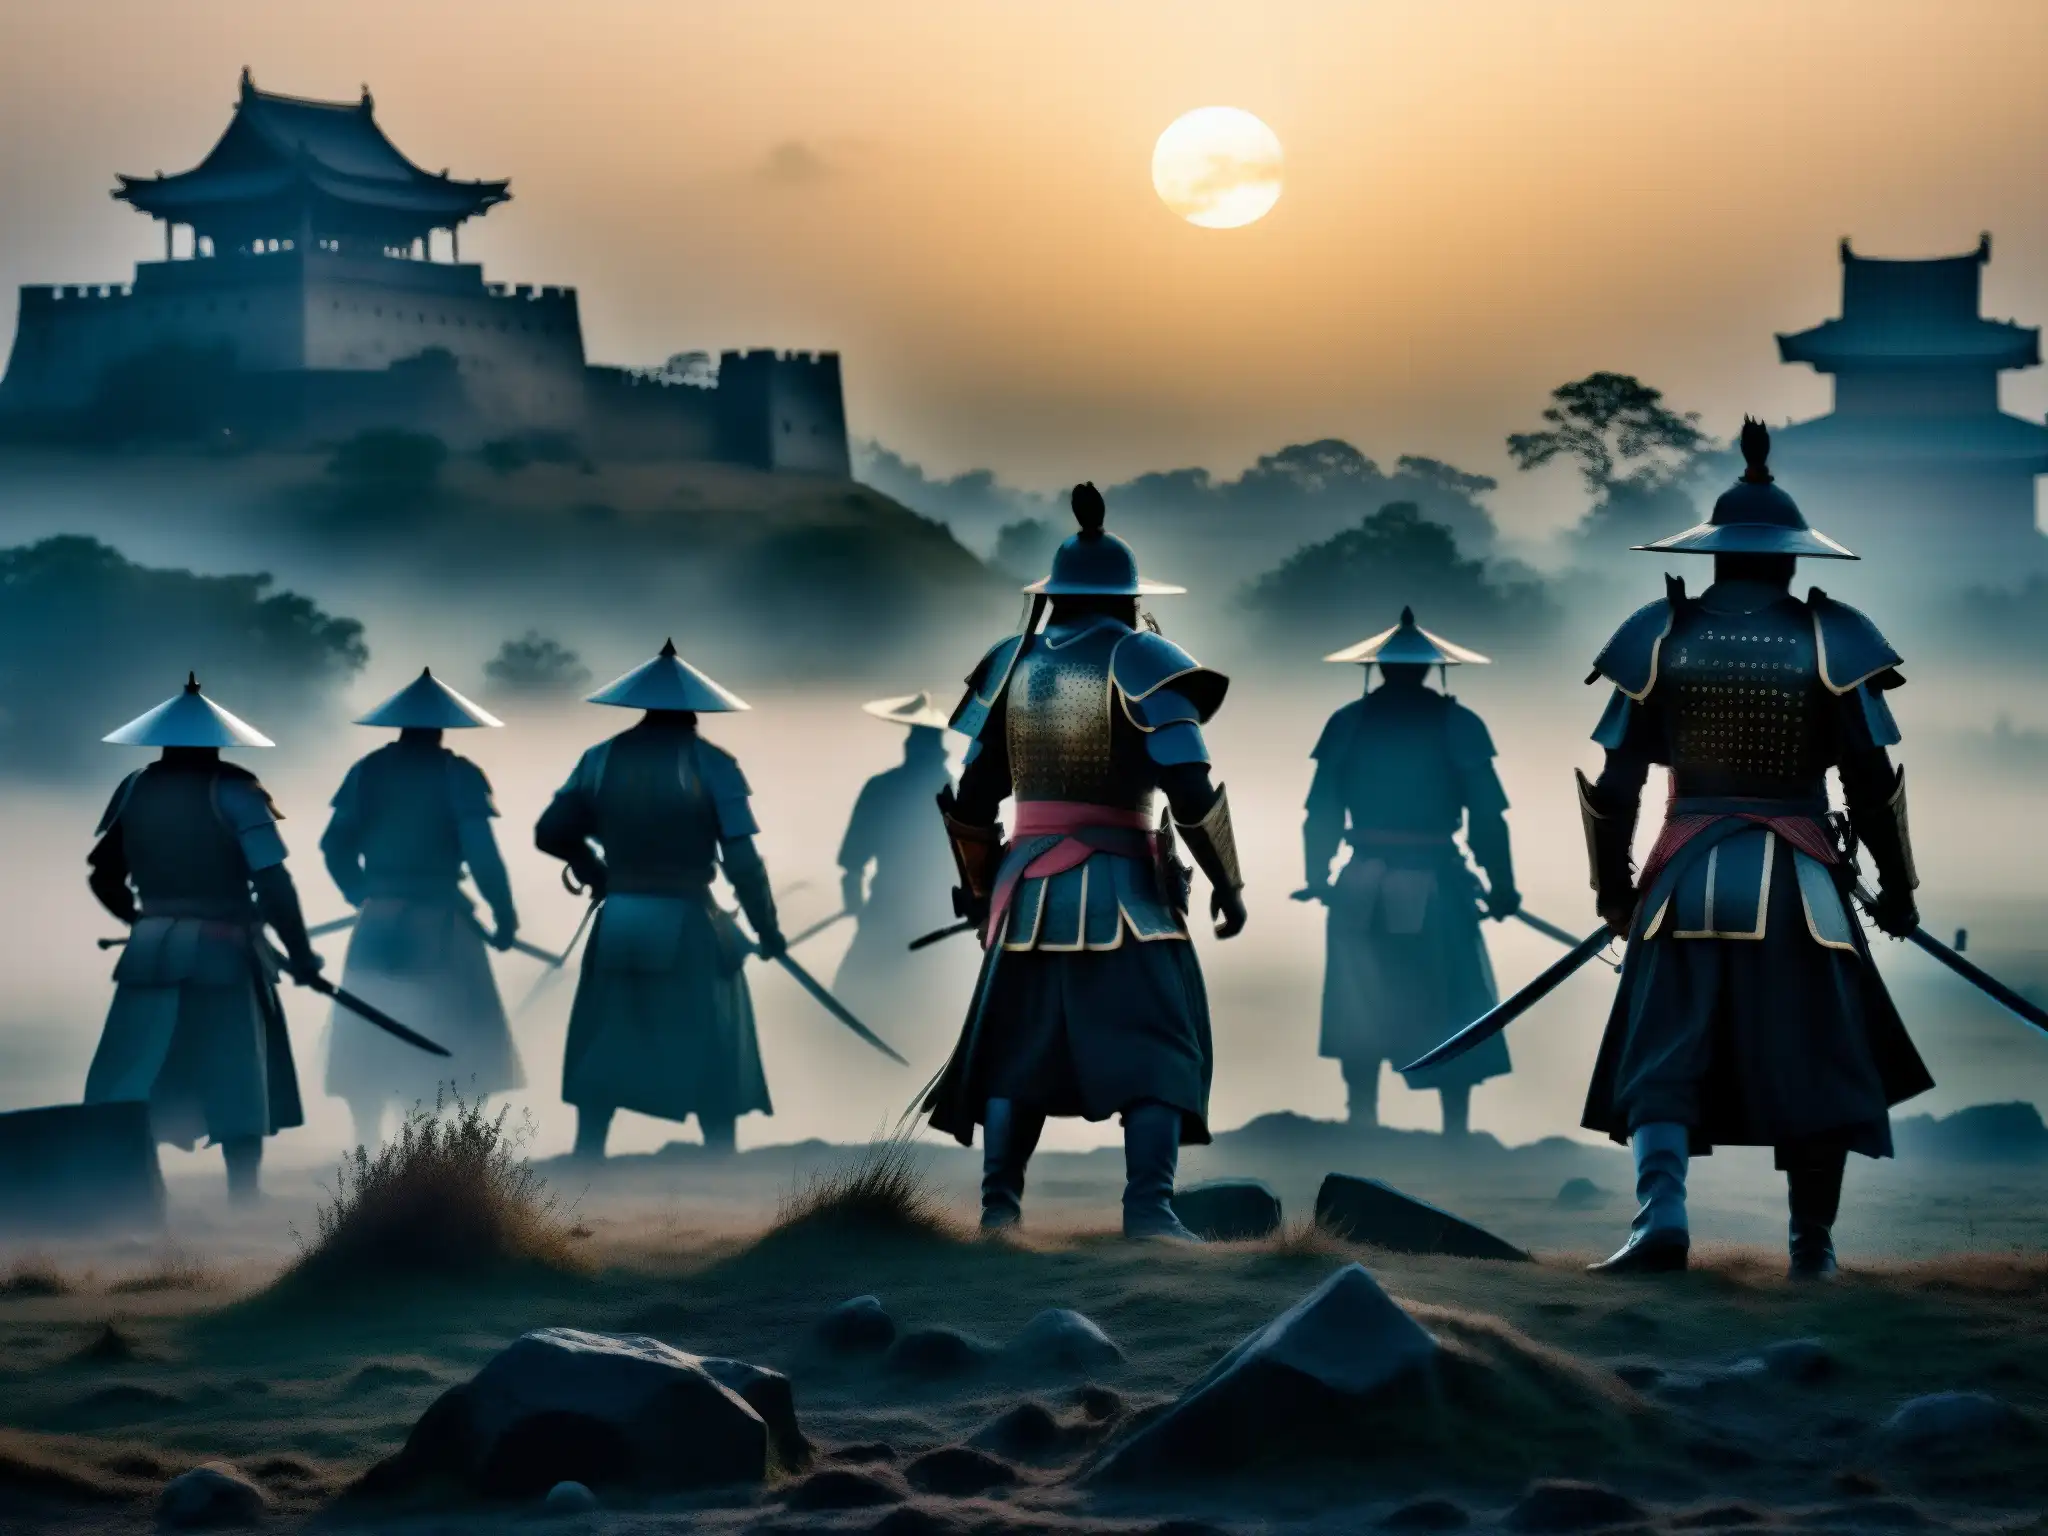 Enigmáticas apariciones samuráis emergen de la niebla en antiguas batallas, evocando una historia misteriosa y sobrenatural